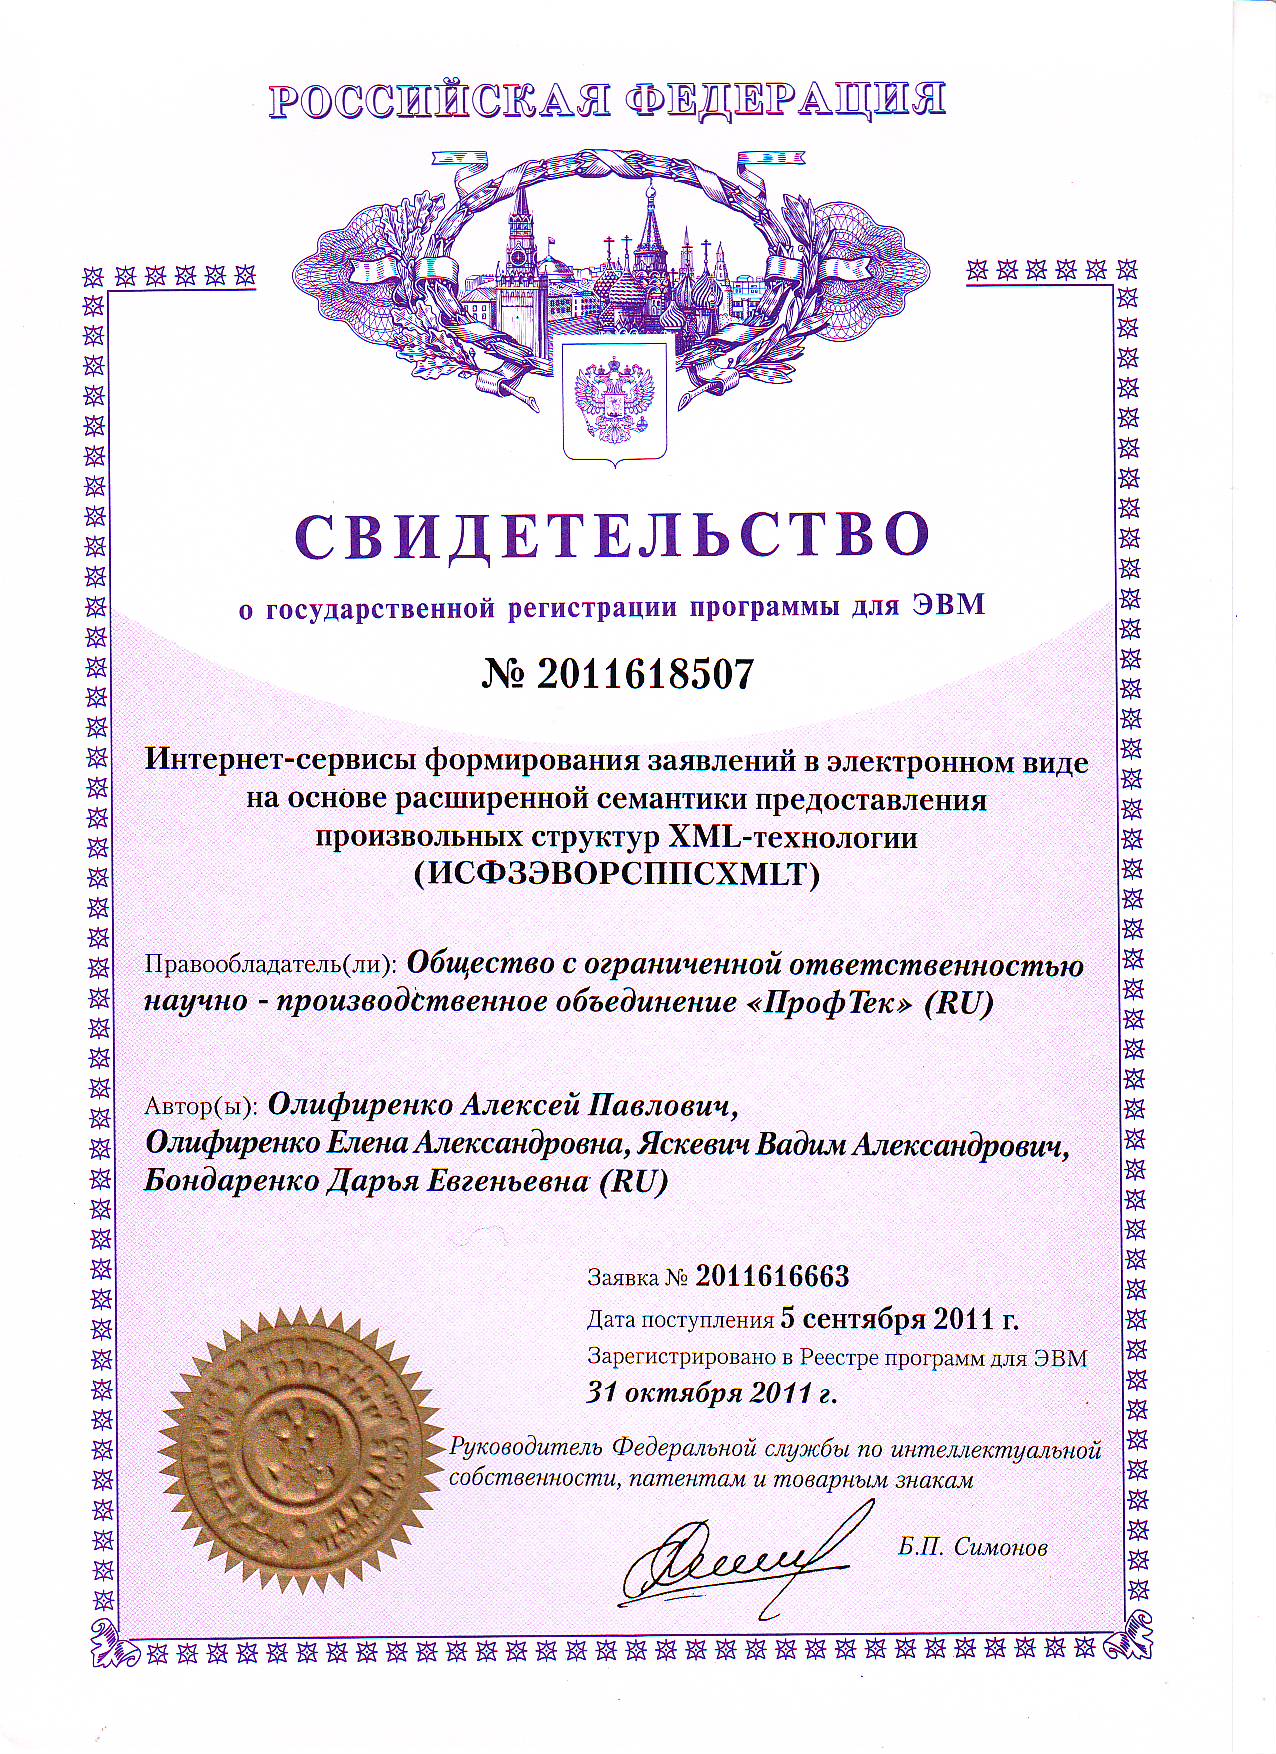 Авторское право свидетельства. Сертификат регистрации программы для ЭВМ. Свидетельство о регистрации программы для ЭВМ. Документ для регистрации авторских прав.